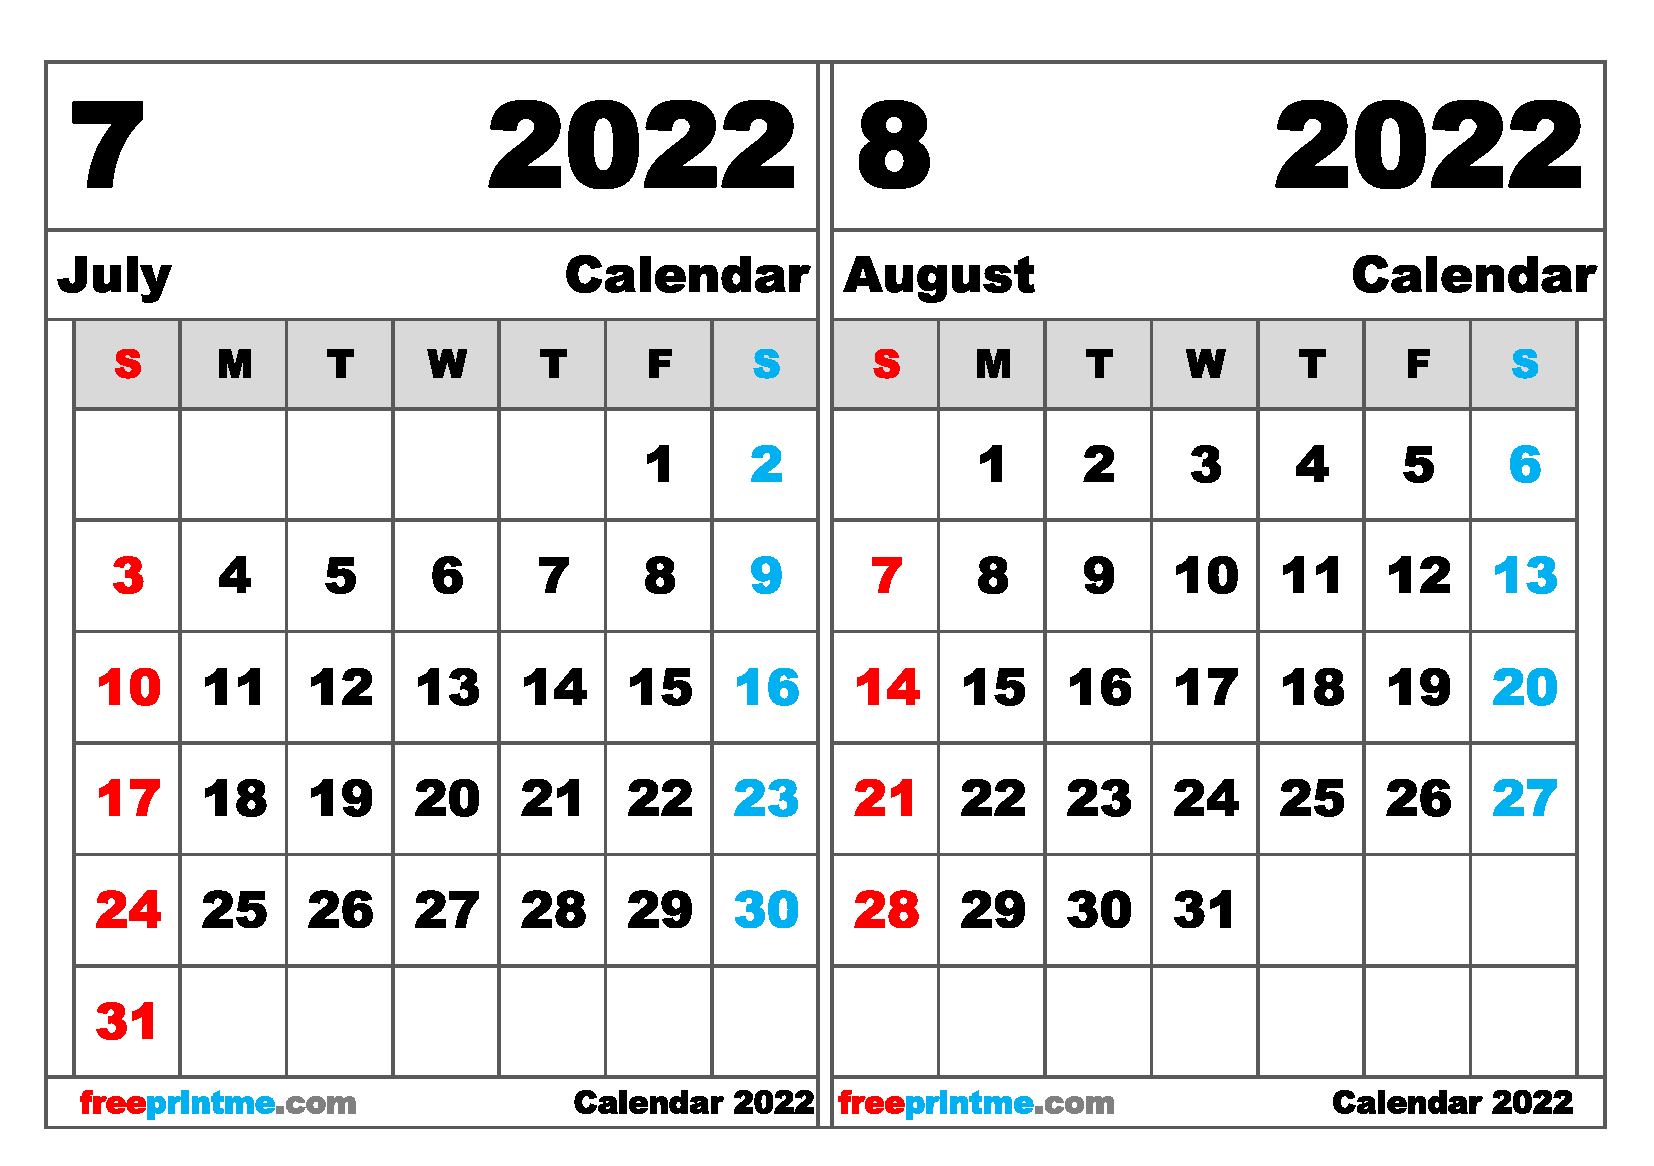 Free Printable Calendar June July August 2022 Free July August 2022 Calendar Printable Variety Of Sizes